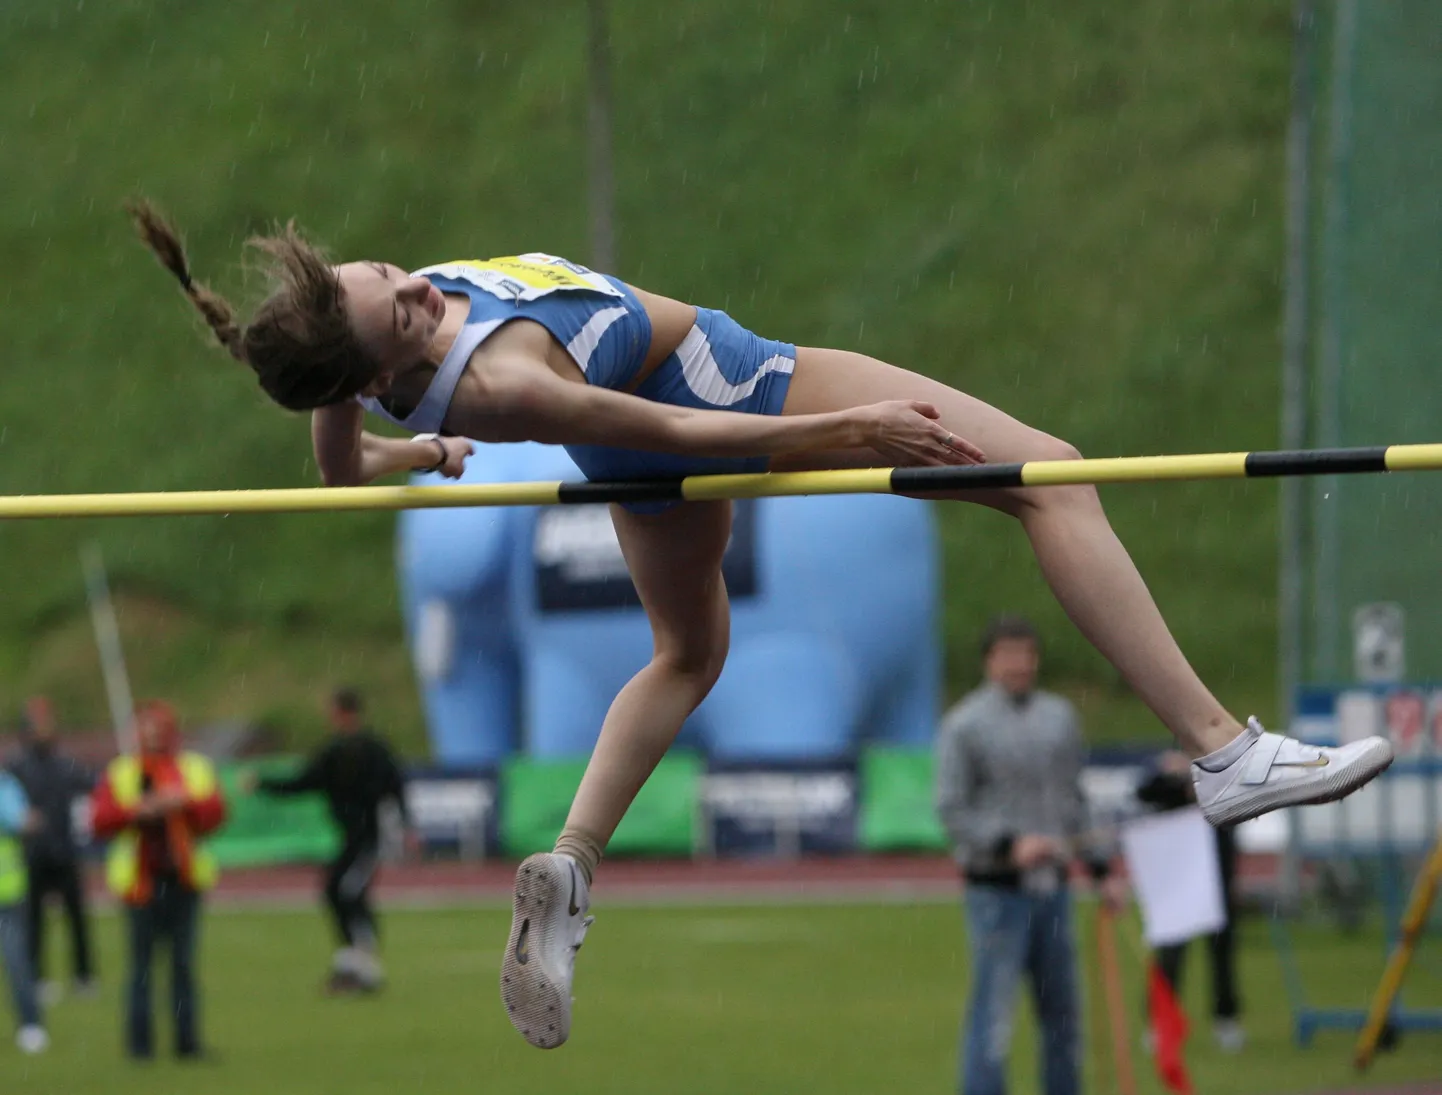 Установив новый рекорд Эстонии, несмотря на температуру, Анна Ильющенко призналась, что случилось маленькое чудо! Хотя к прыжку на 1,95 она была готова и в Барселоне, но там не задалось… А в Раквере – и рекорд, и джекпот!